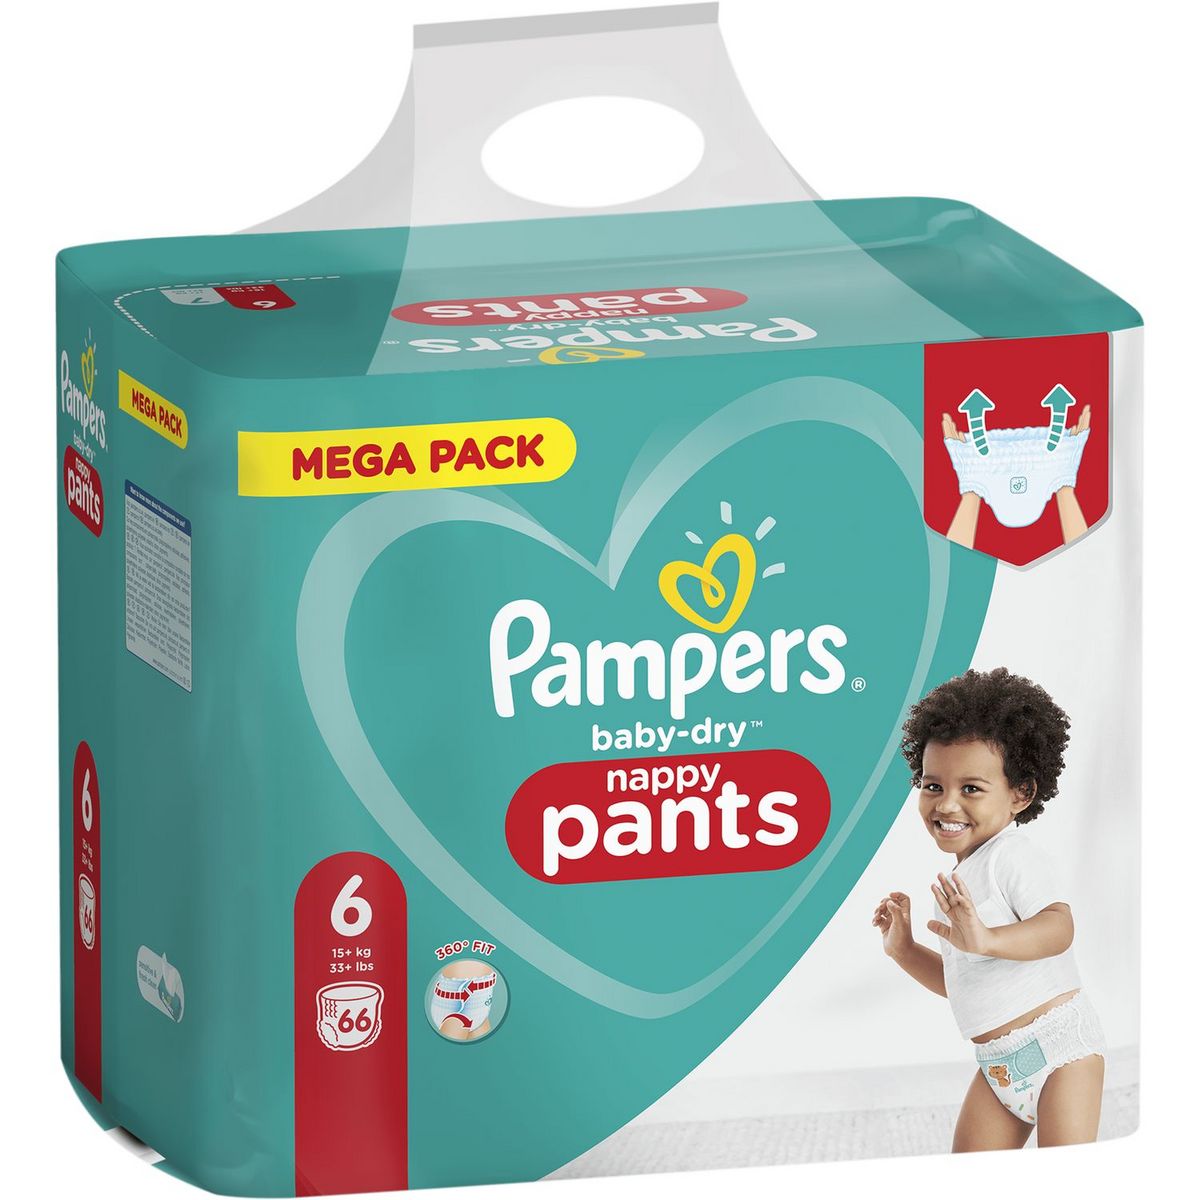 Couche Pampers Pants Taille 6 Couches 19 Pour Enfant Plus De 15+ Kg Confort  Fit 360°